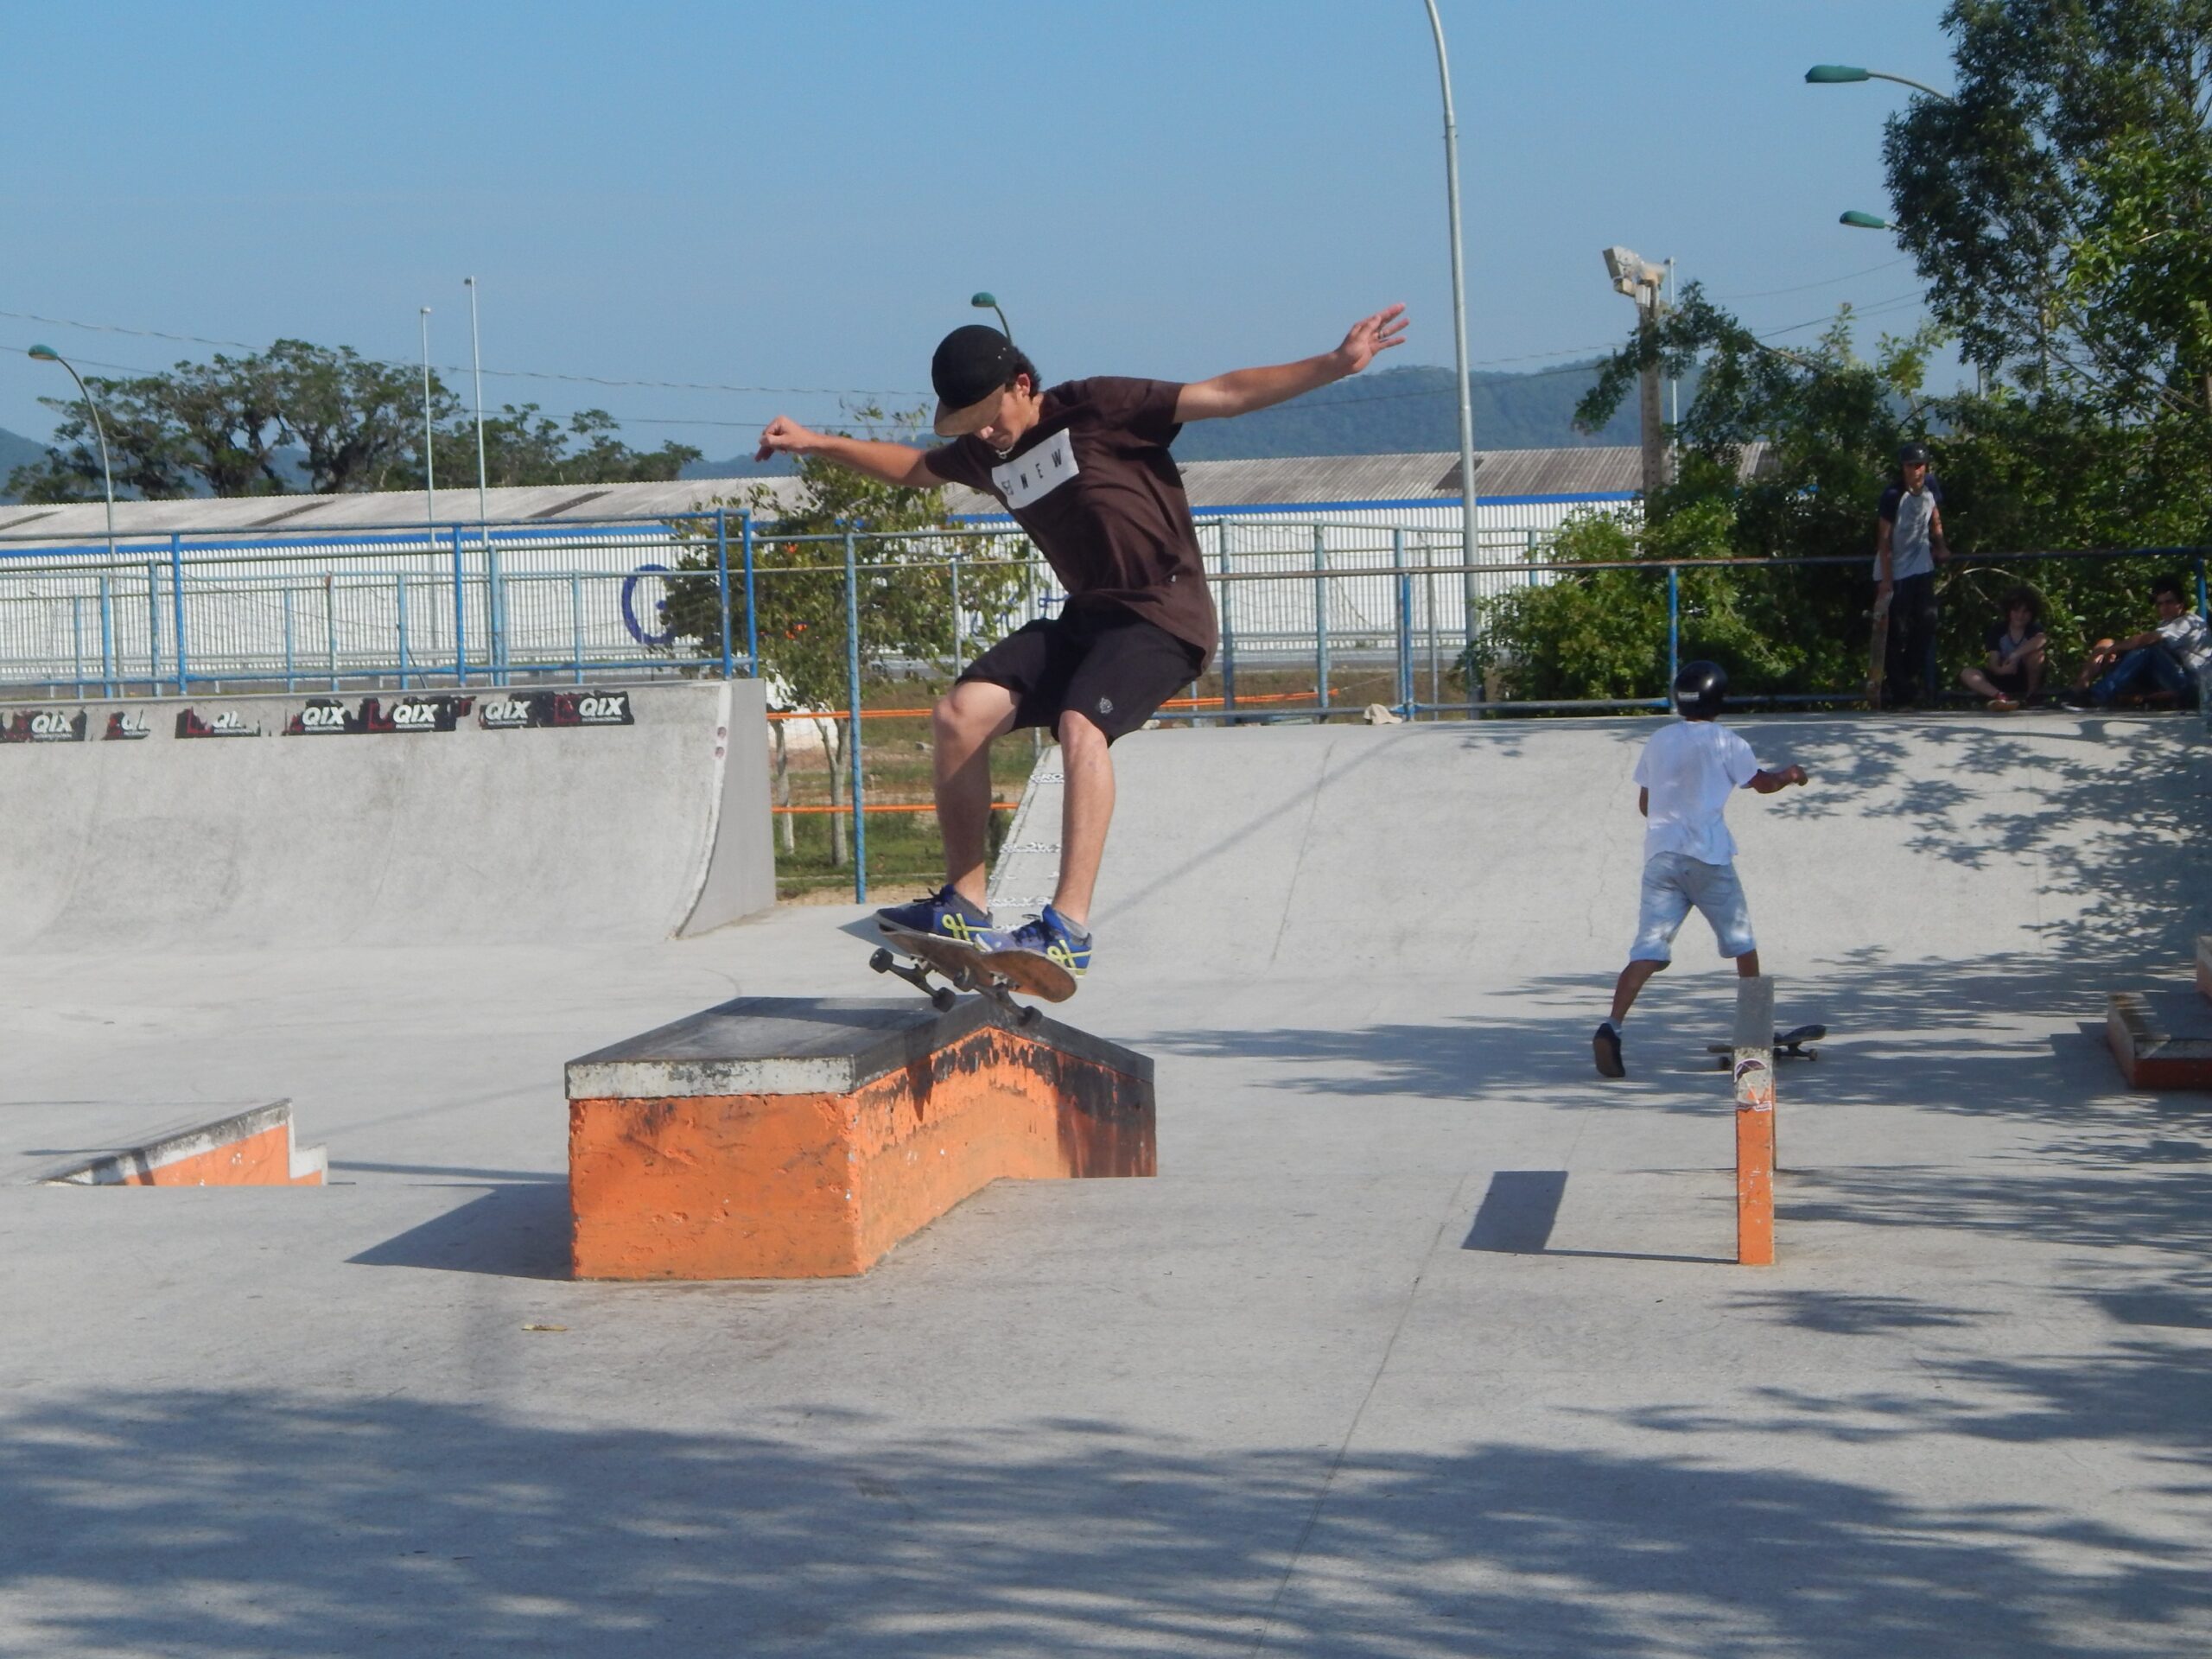 Gaspar terá dois representantes no Sul Brasileiro de Skate